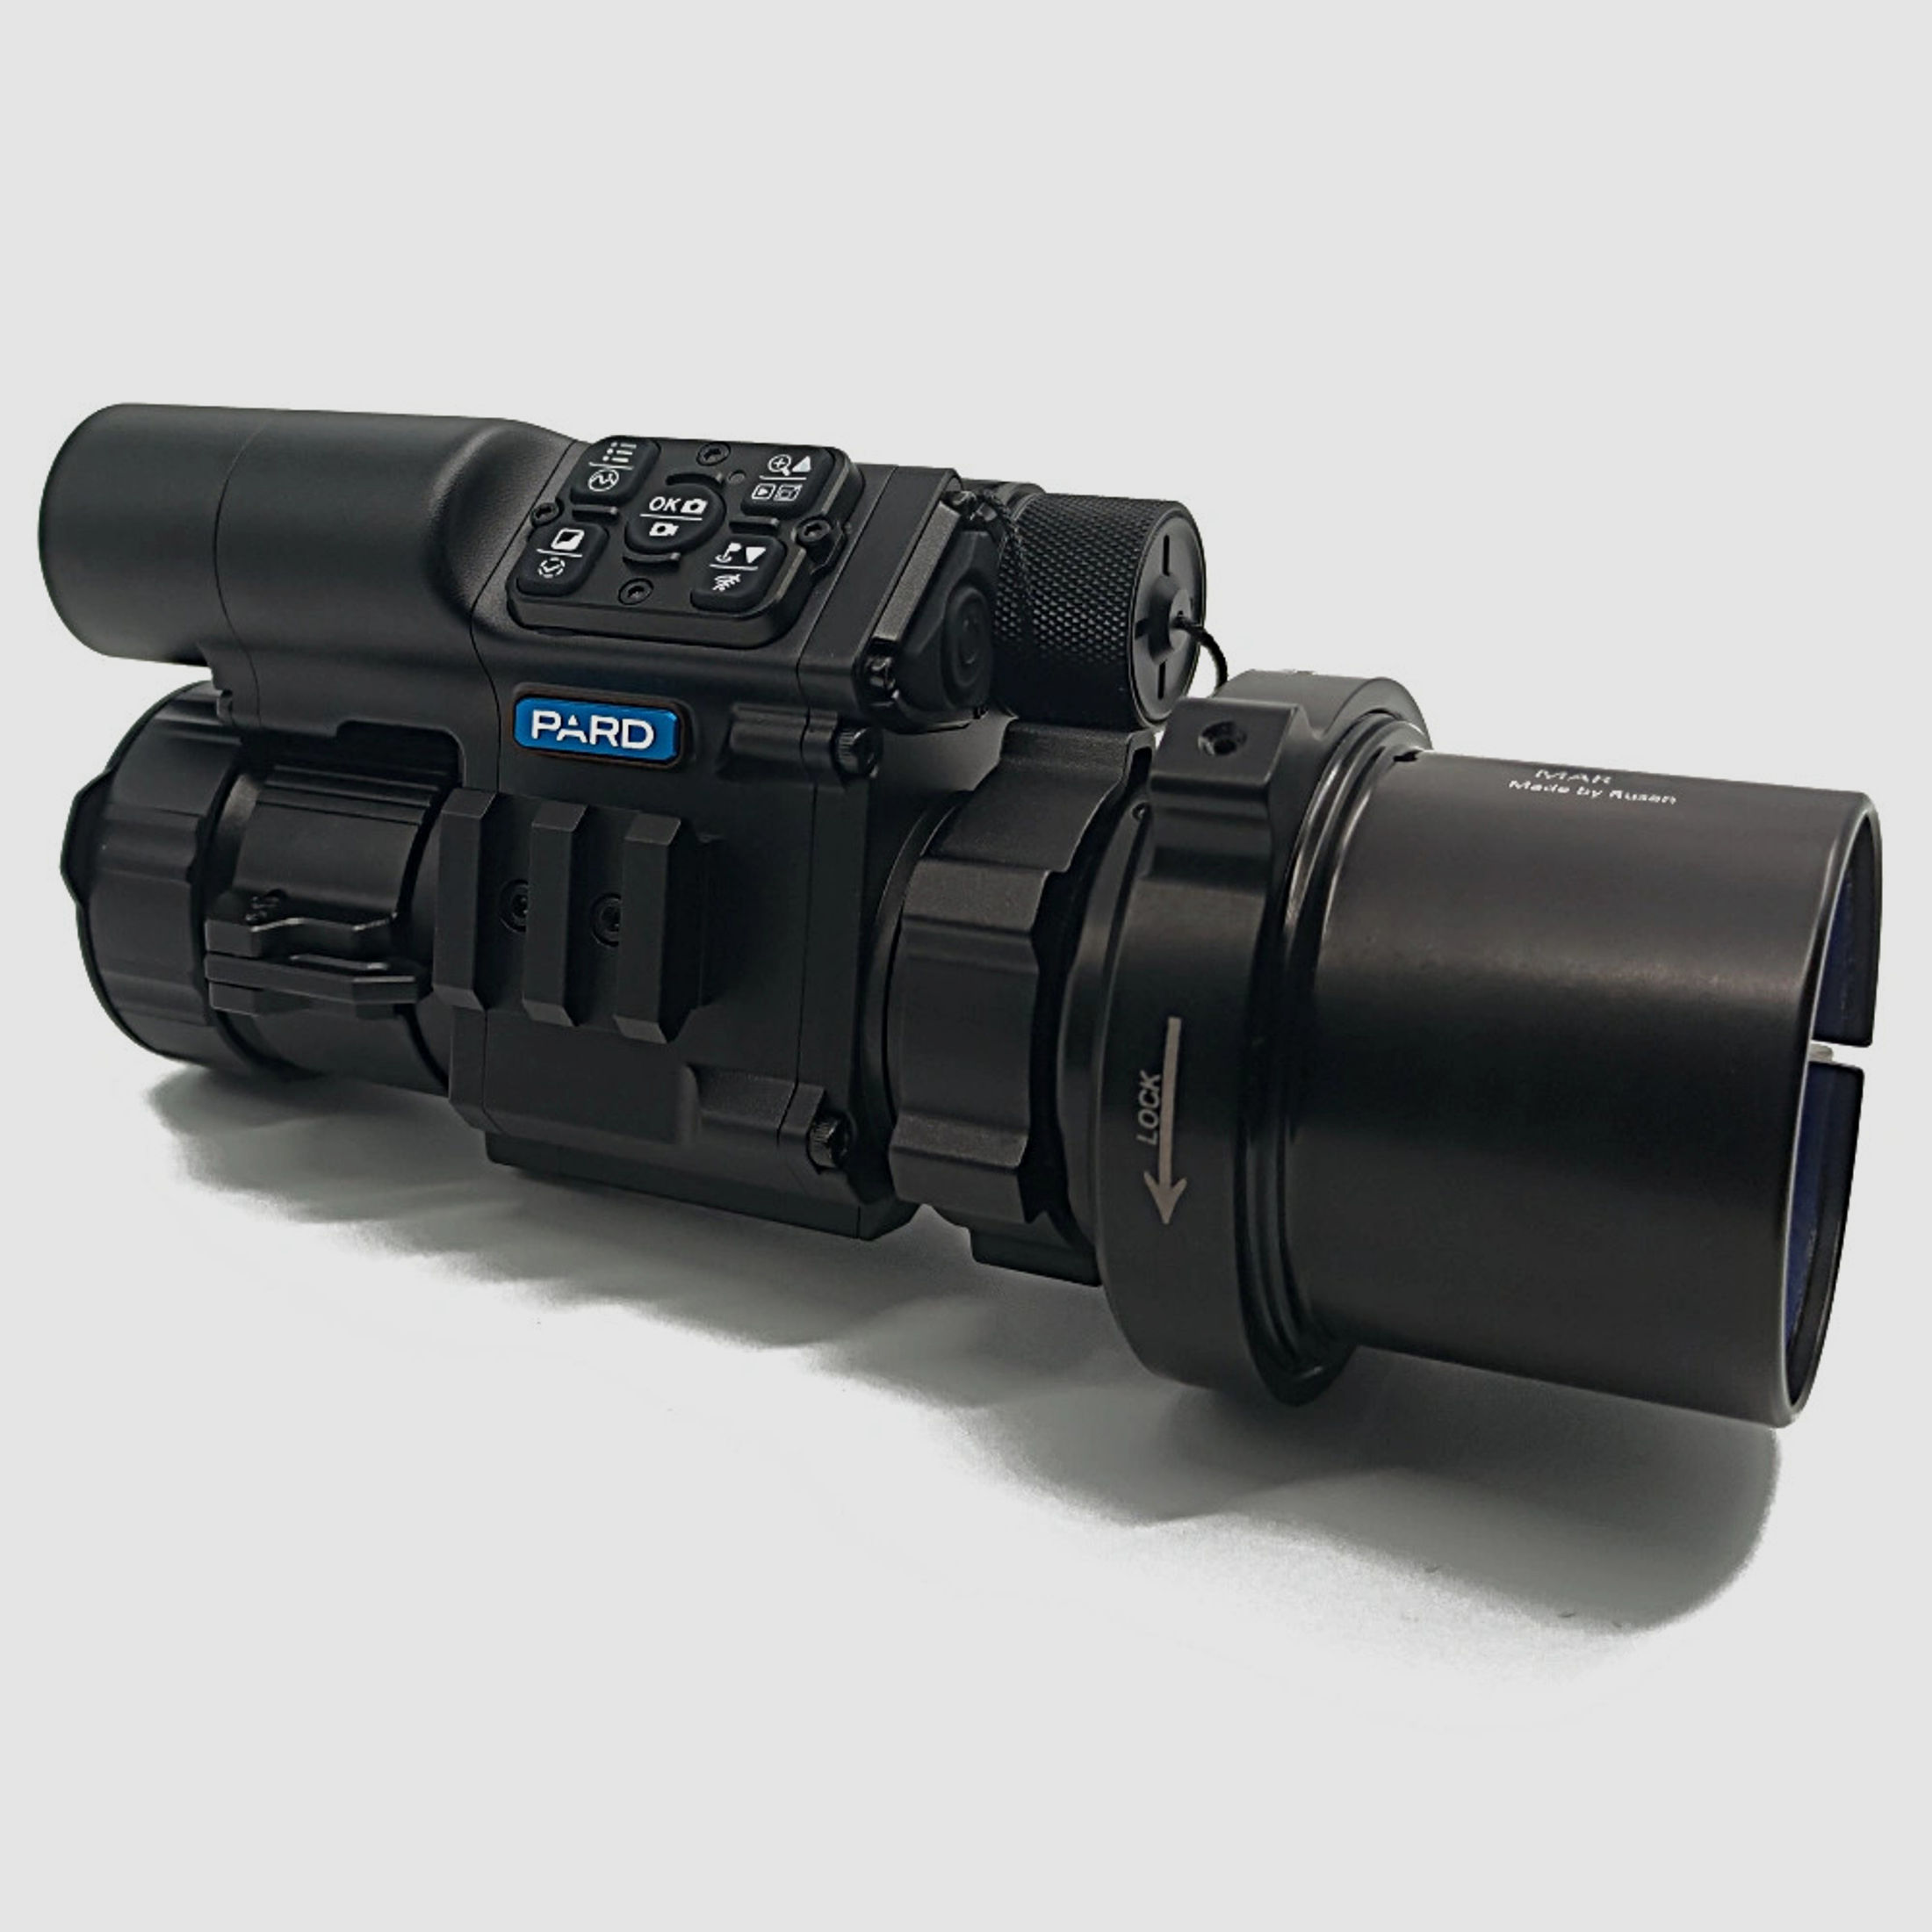 PARD FD1 Nachtsicht 3 in 1 Vorsatz, Monokular & Zielfernrohr - 850 nm mit LRF 64 mm RUSAN MAR + RUSAN MCR